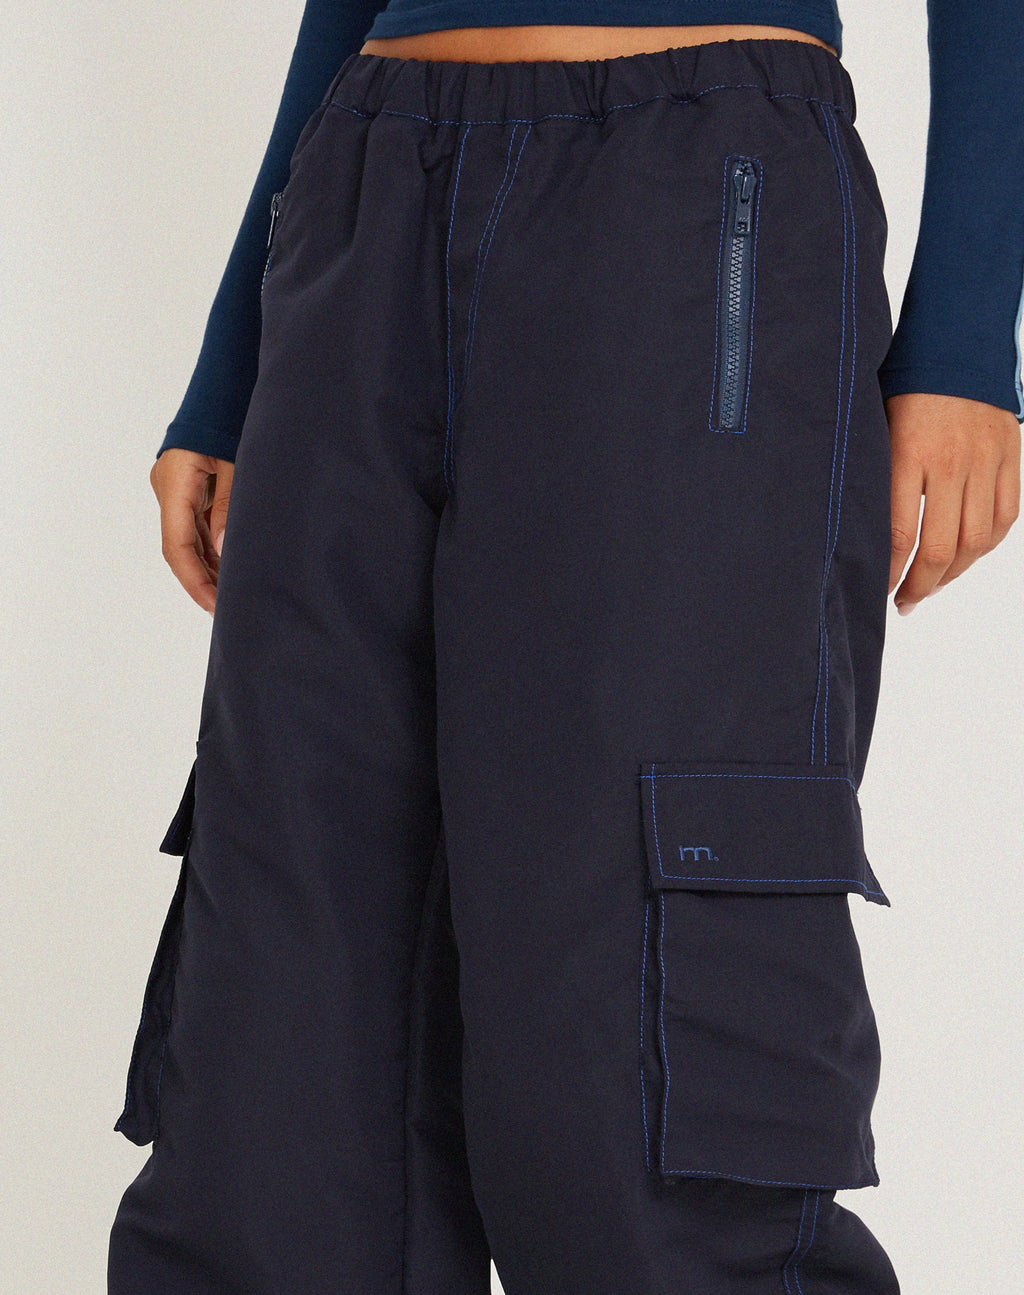 Pantalon cargo Oriells en bleu marine à surpiqûres